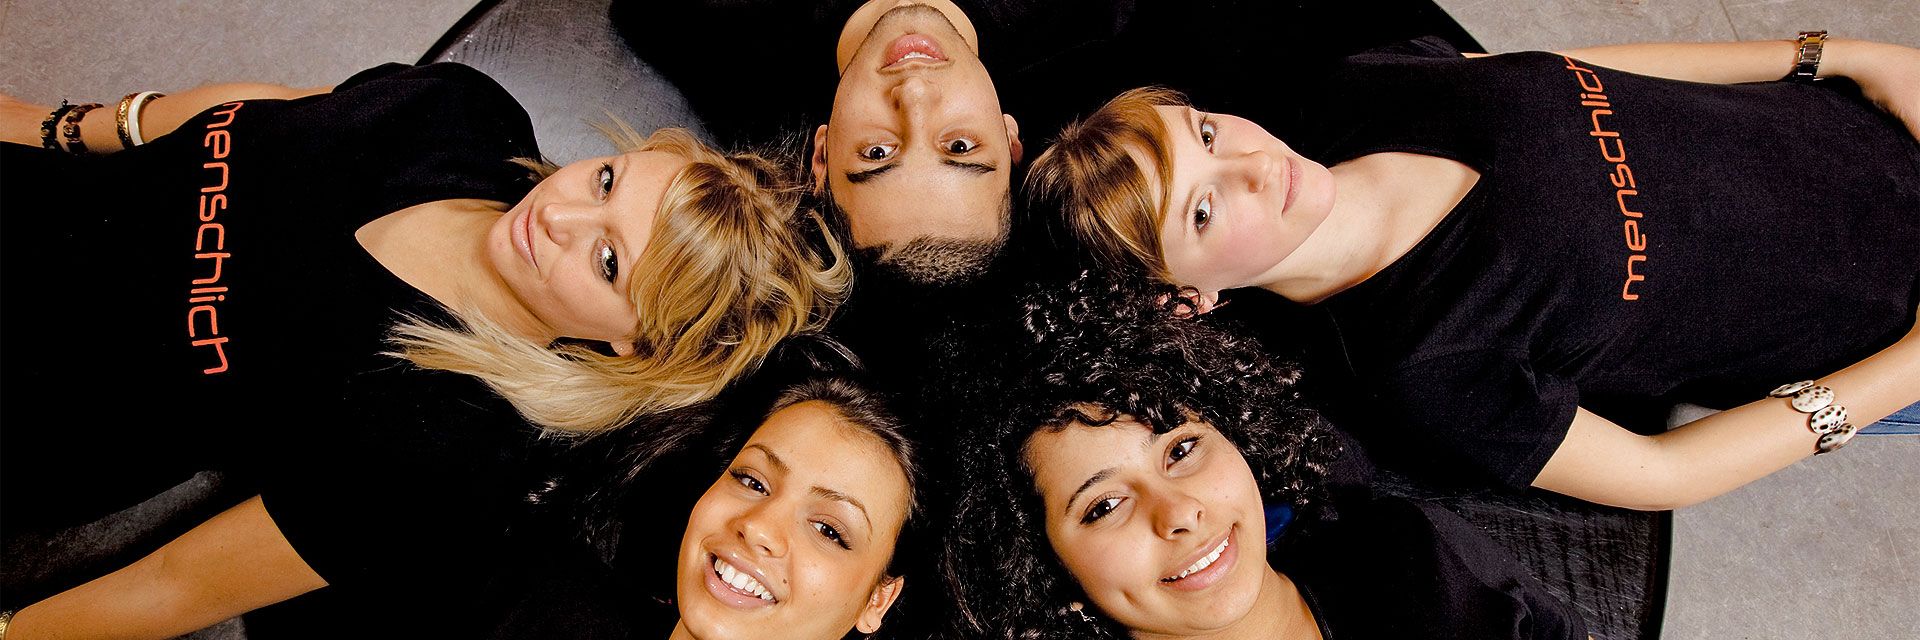 Foto: Fünf Jugendliche liegen Kopf an Kopf im Kreis. Sie lachen und wirken vergnügt und herzlich. Alle tragen ein schwarzes T-Shirt mit der Aufschrift 'menschlich'.